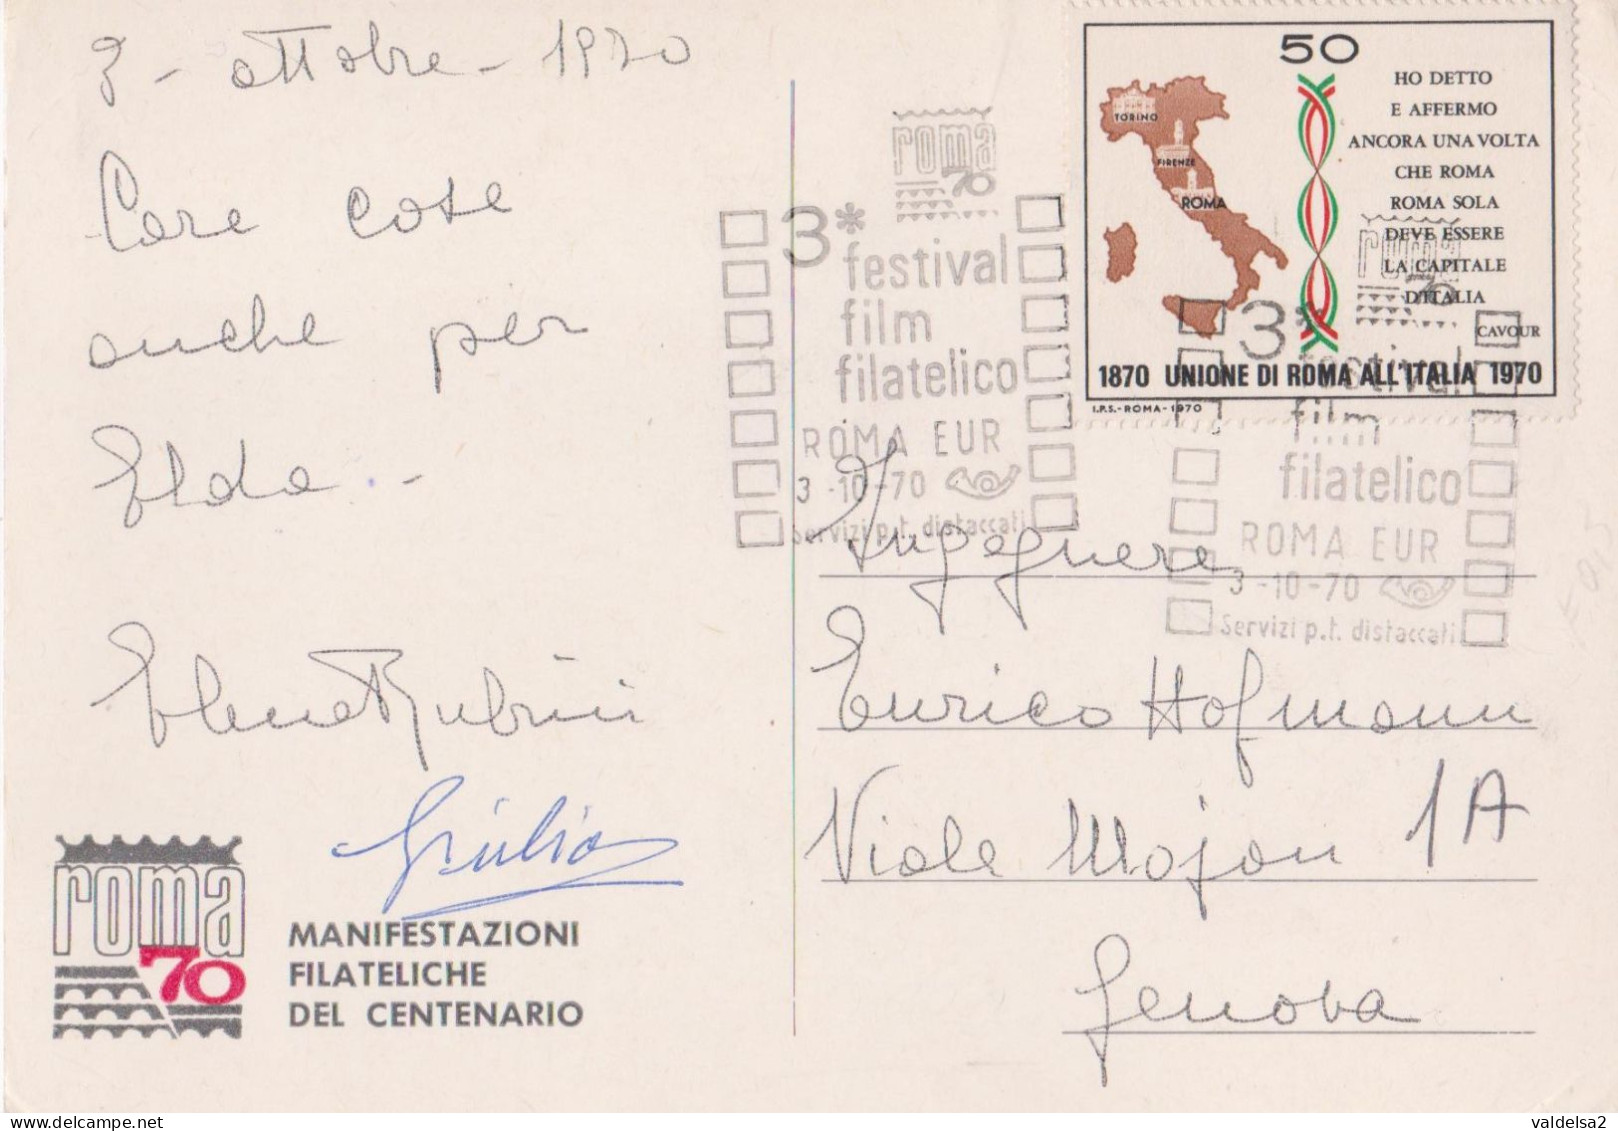 ROMA EUR - PALAZZO DEI CONGRESSI - MANIFESTAZIONI FILATELICHE DEL CENTENARIO 3/10/1970 - ANNULLO SPECIALE - Ausstellungen